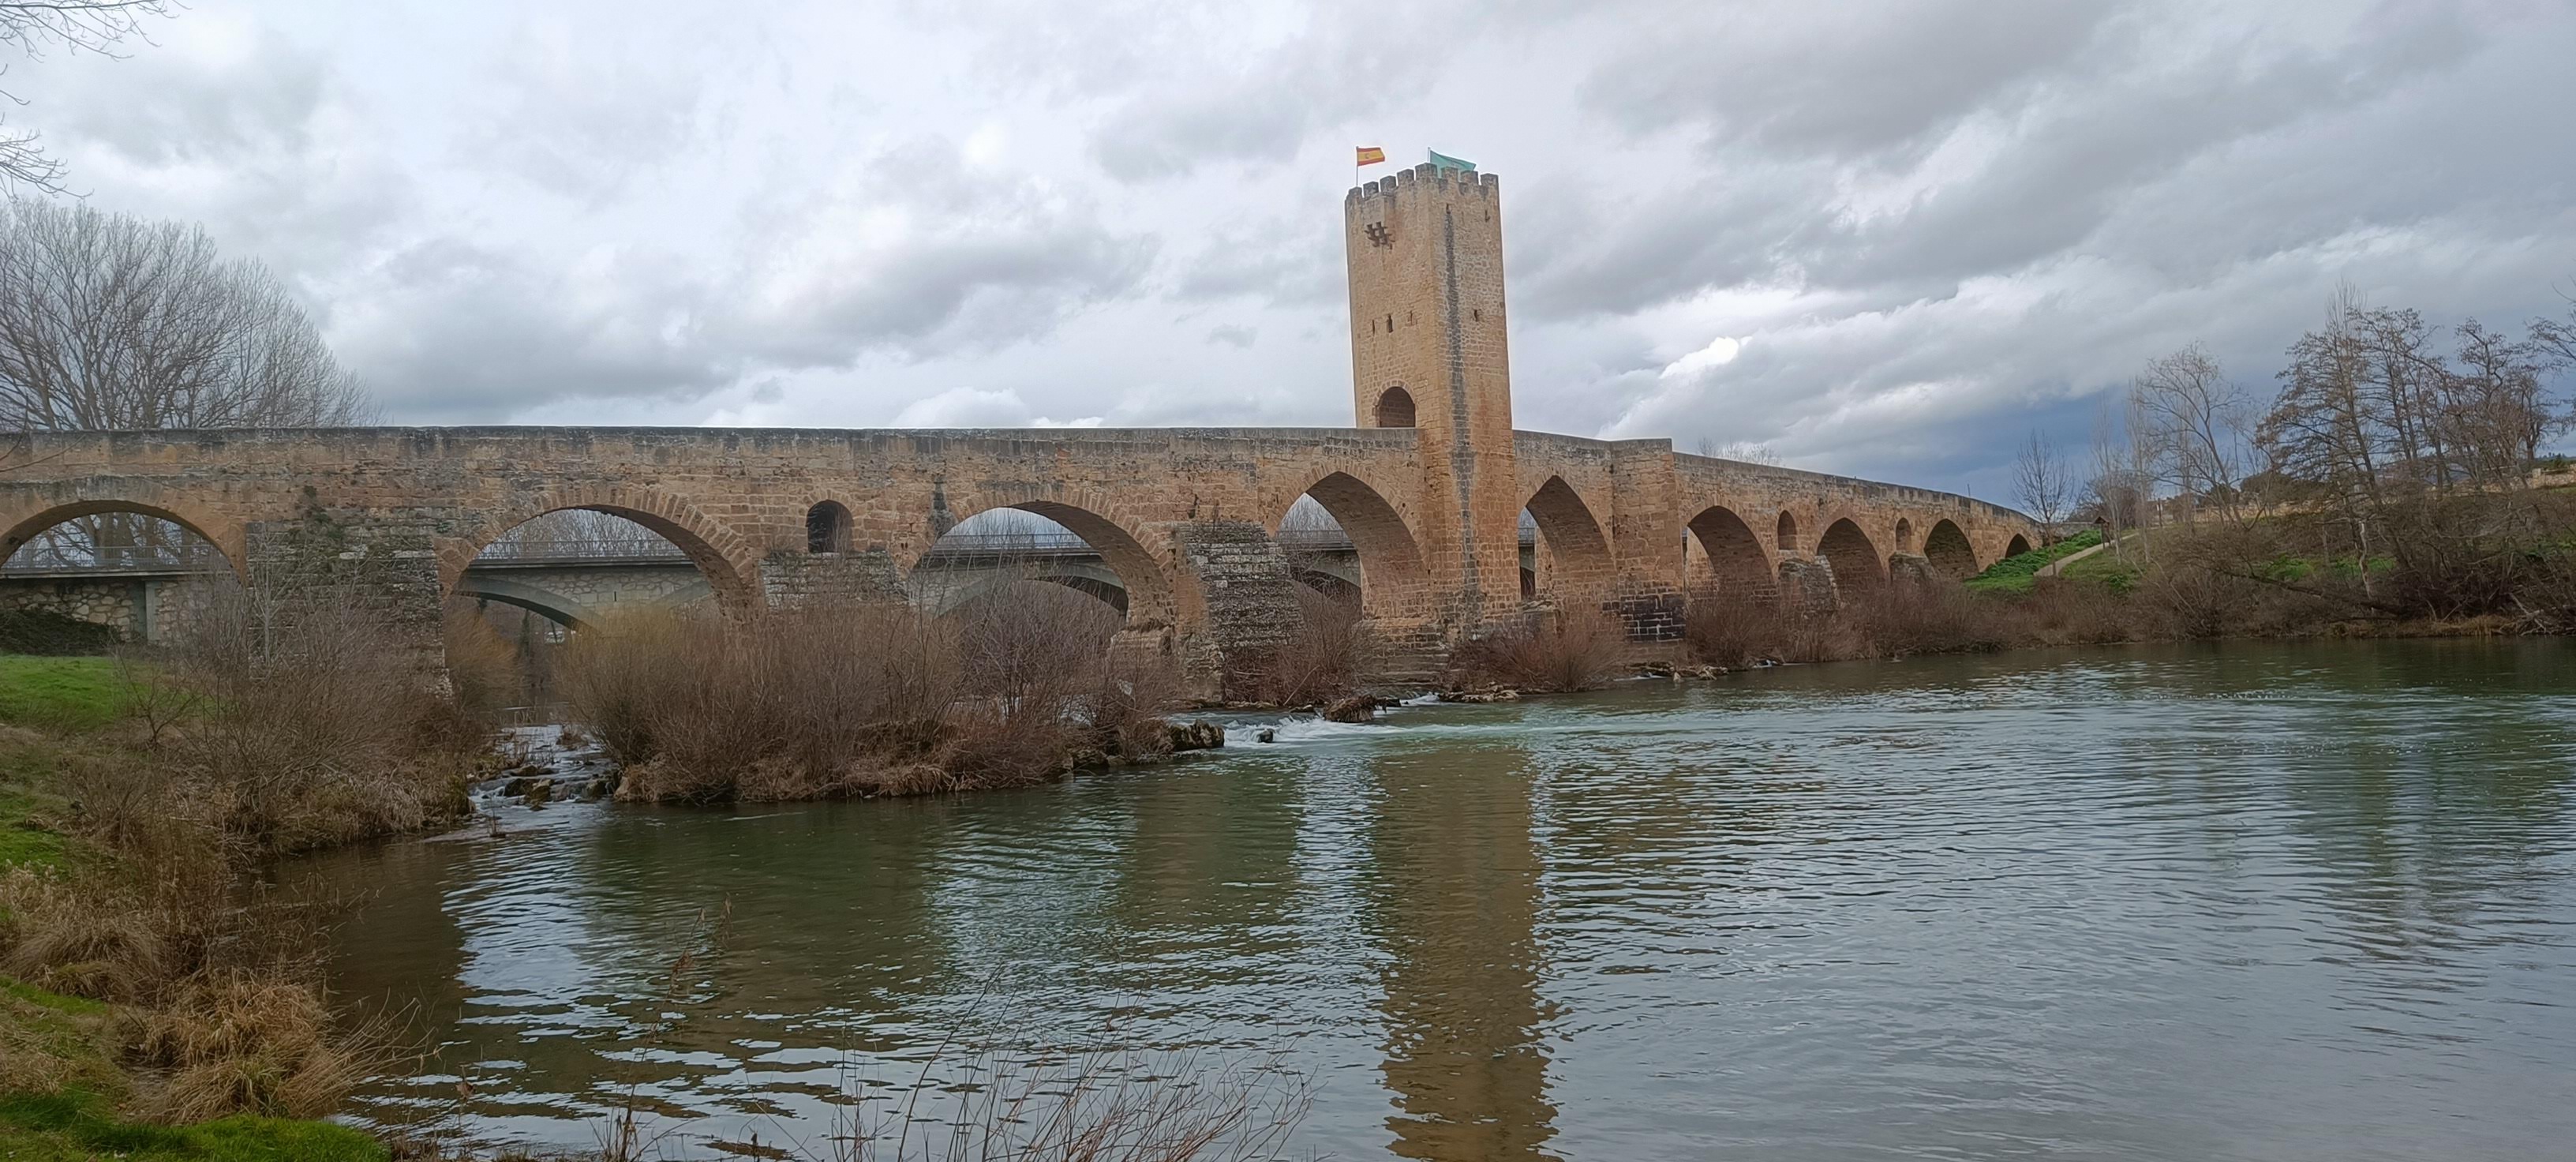 Puente medieval sobre el Ebro, a las afueras de Frías, en la vega. Foto de E. Nieto Striano.